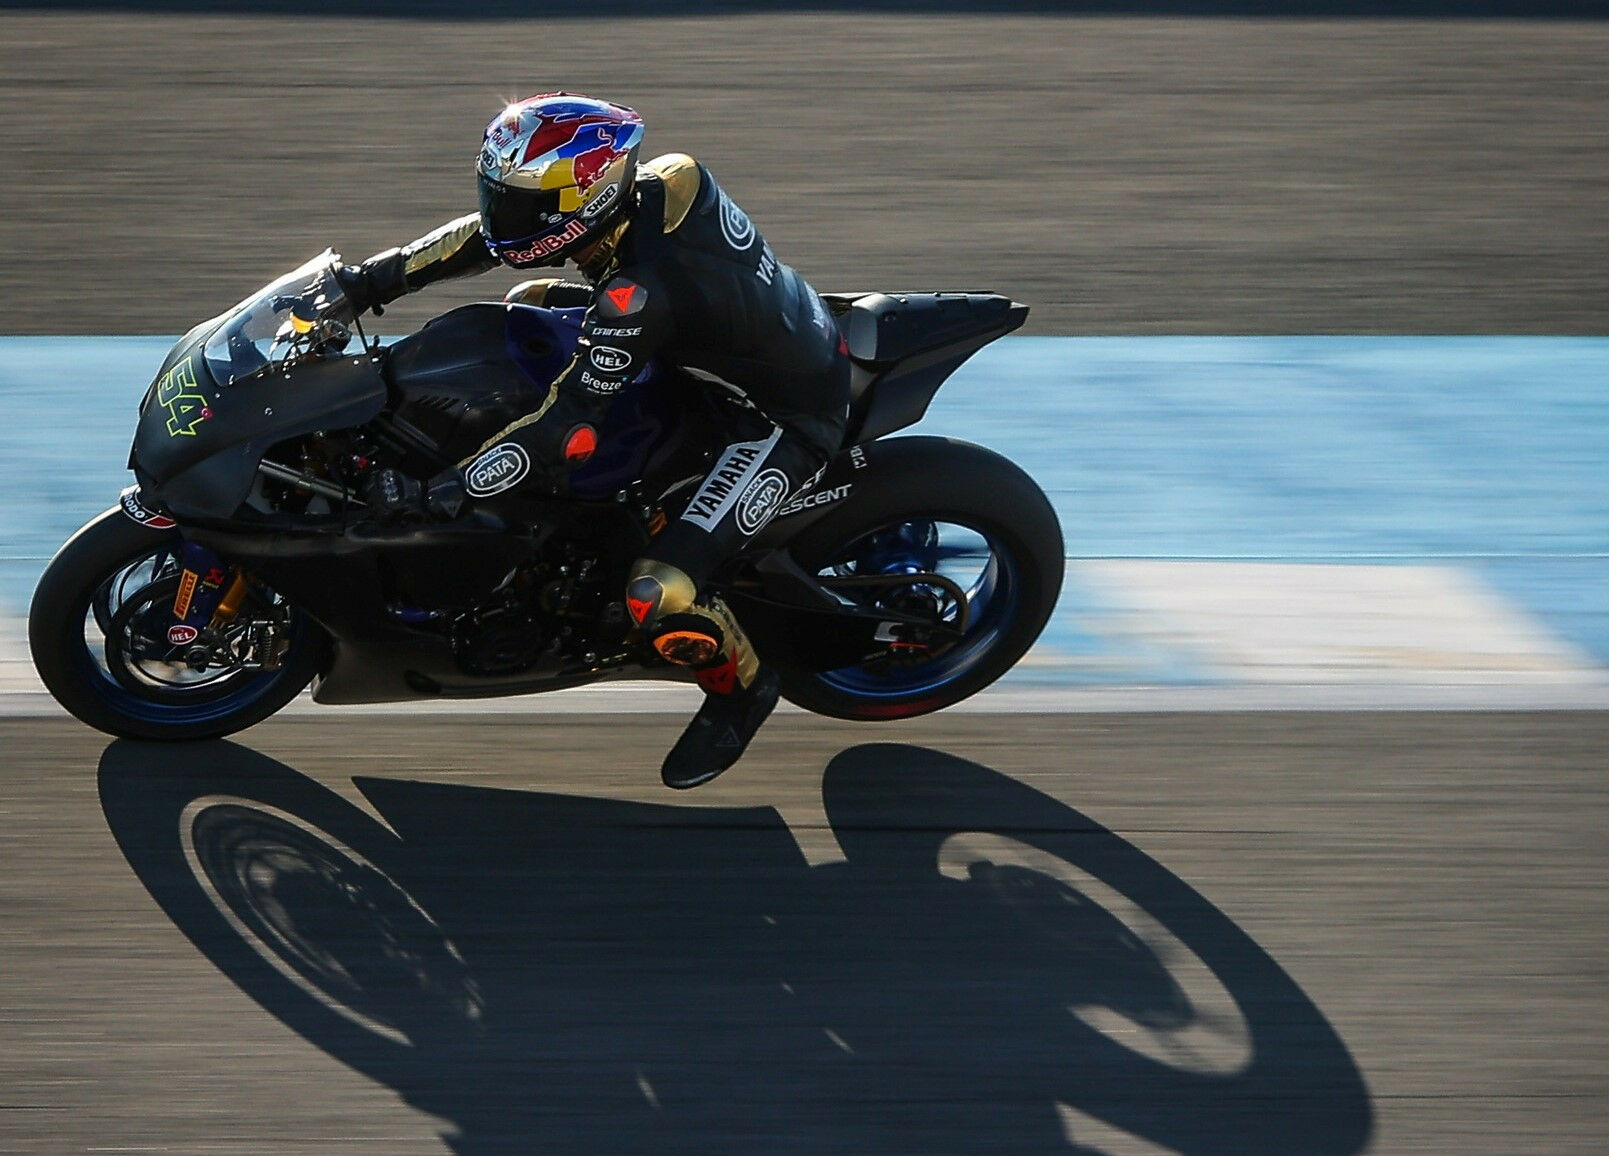 Toprak Razgatlioglu (54), as seen during testing Wednesday at Jerez. Photo courtesy Dorna WorldSBK Press Office.